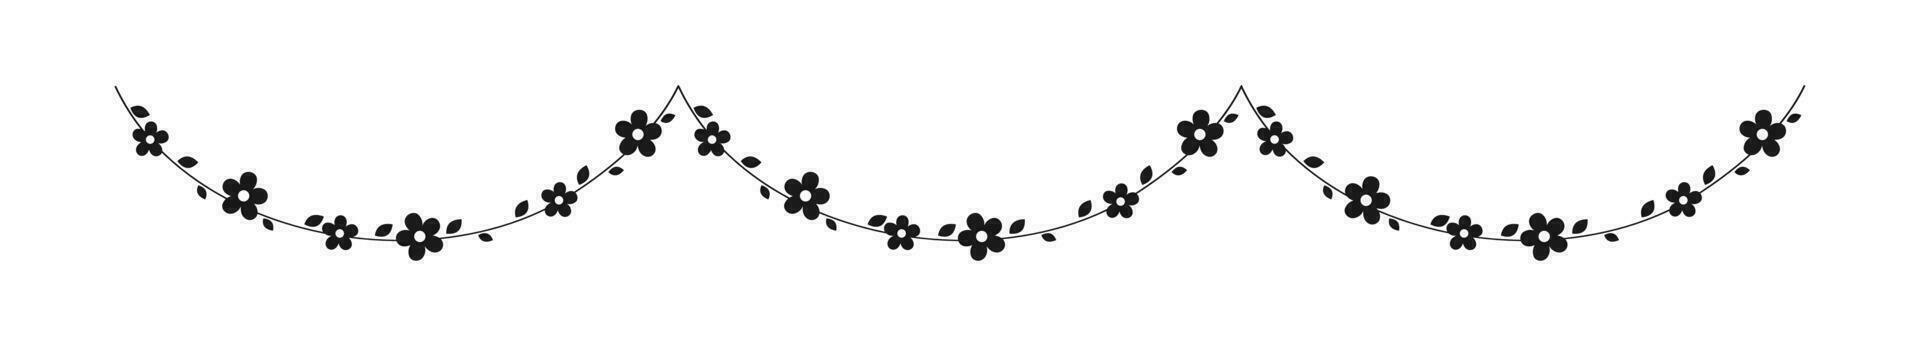 hängend Reben mit Blumen Girlande Silhouette Vektor Illustration. einfach minimal Blumen- botanisch Design Elemente zum Frühling.